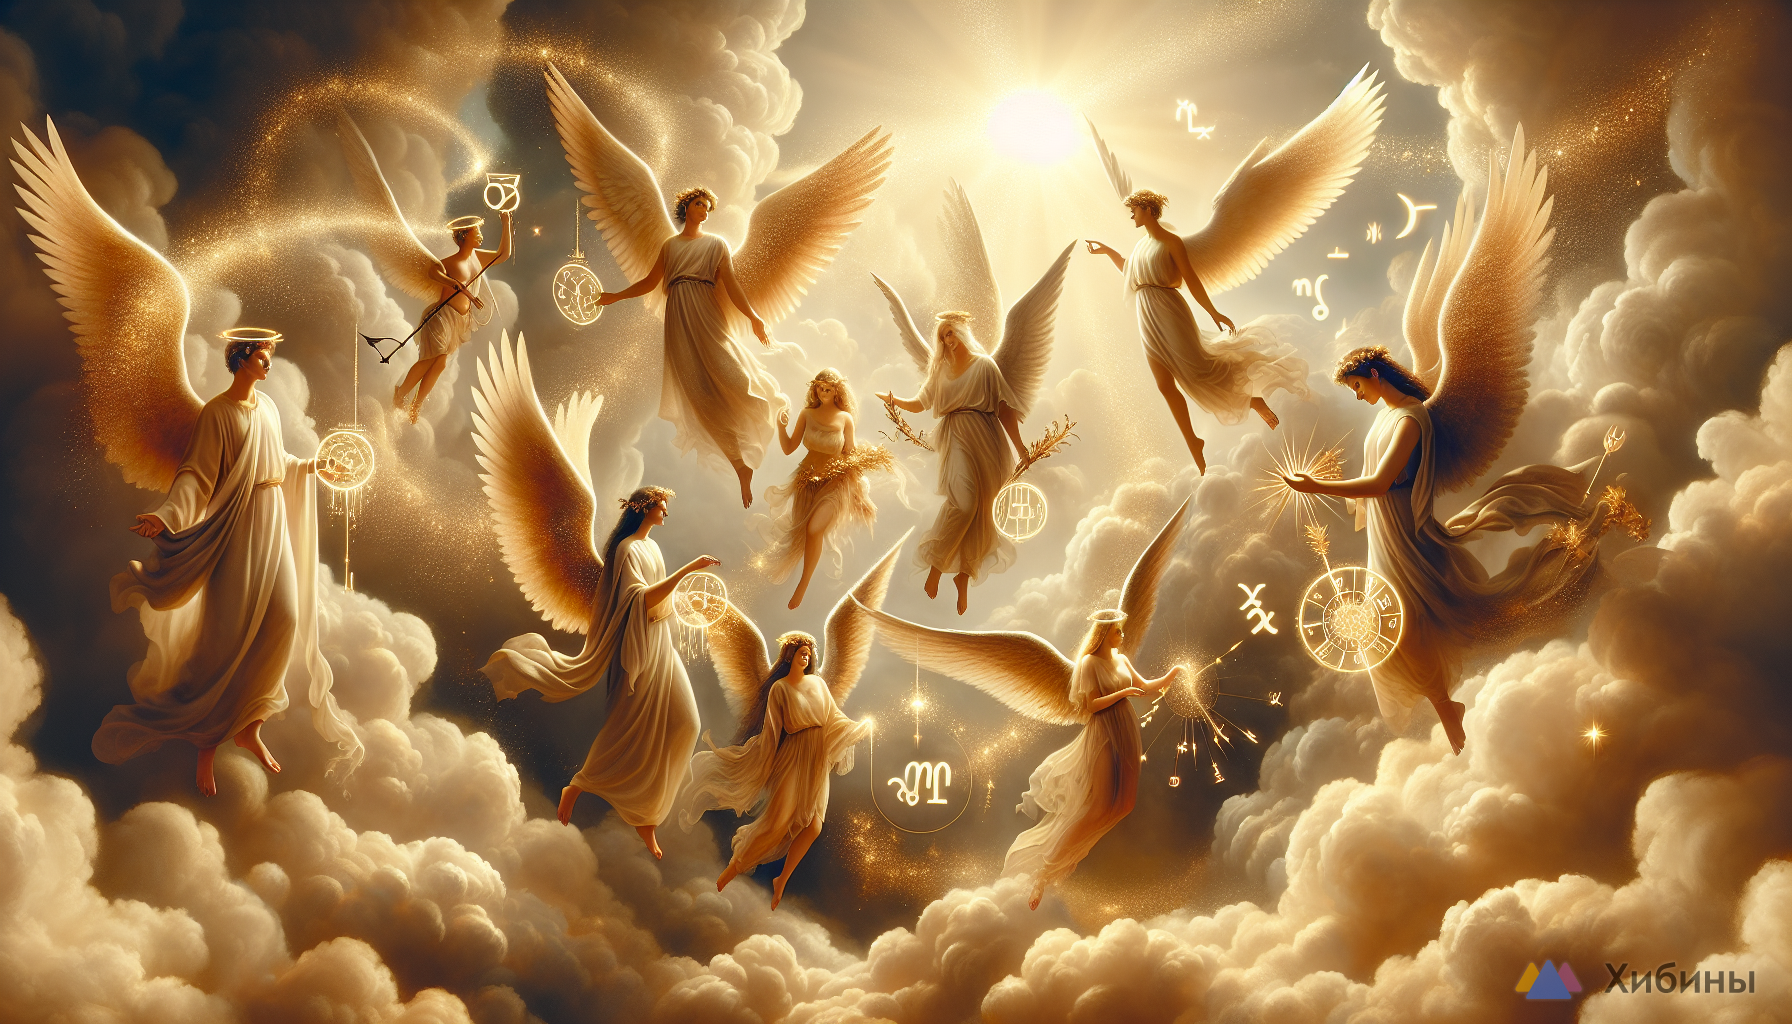 Небеса помогут и направят по верному пути: Названы 3 знака Зодиака, которым звезды сулят сказочное везение — прислушайтесь к своей интуиции с 15 по 22 июня